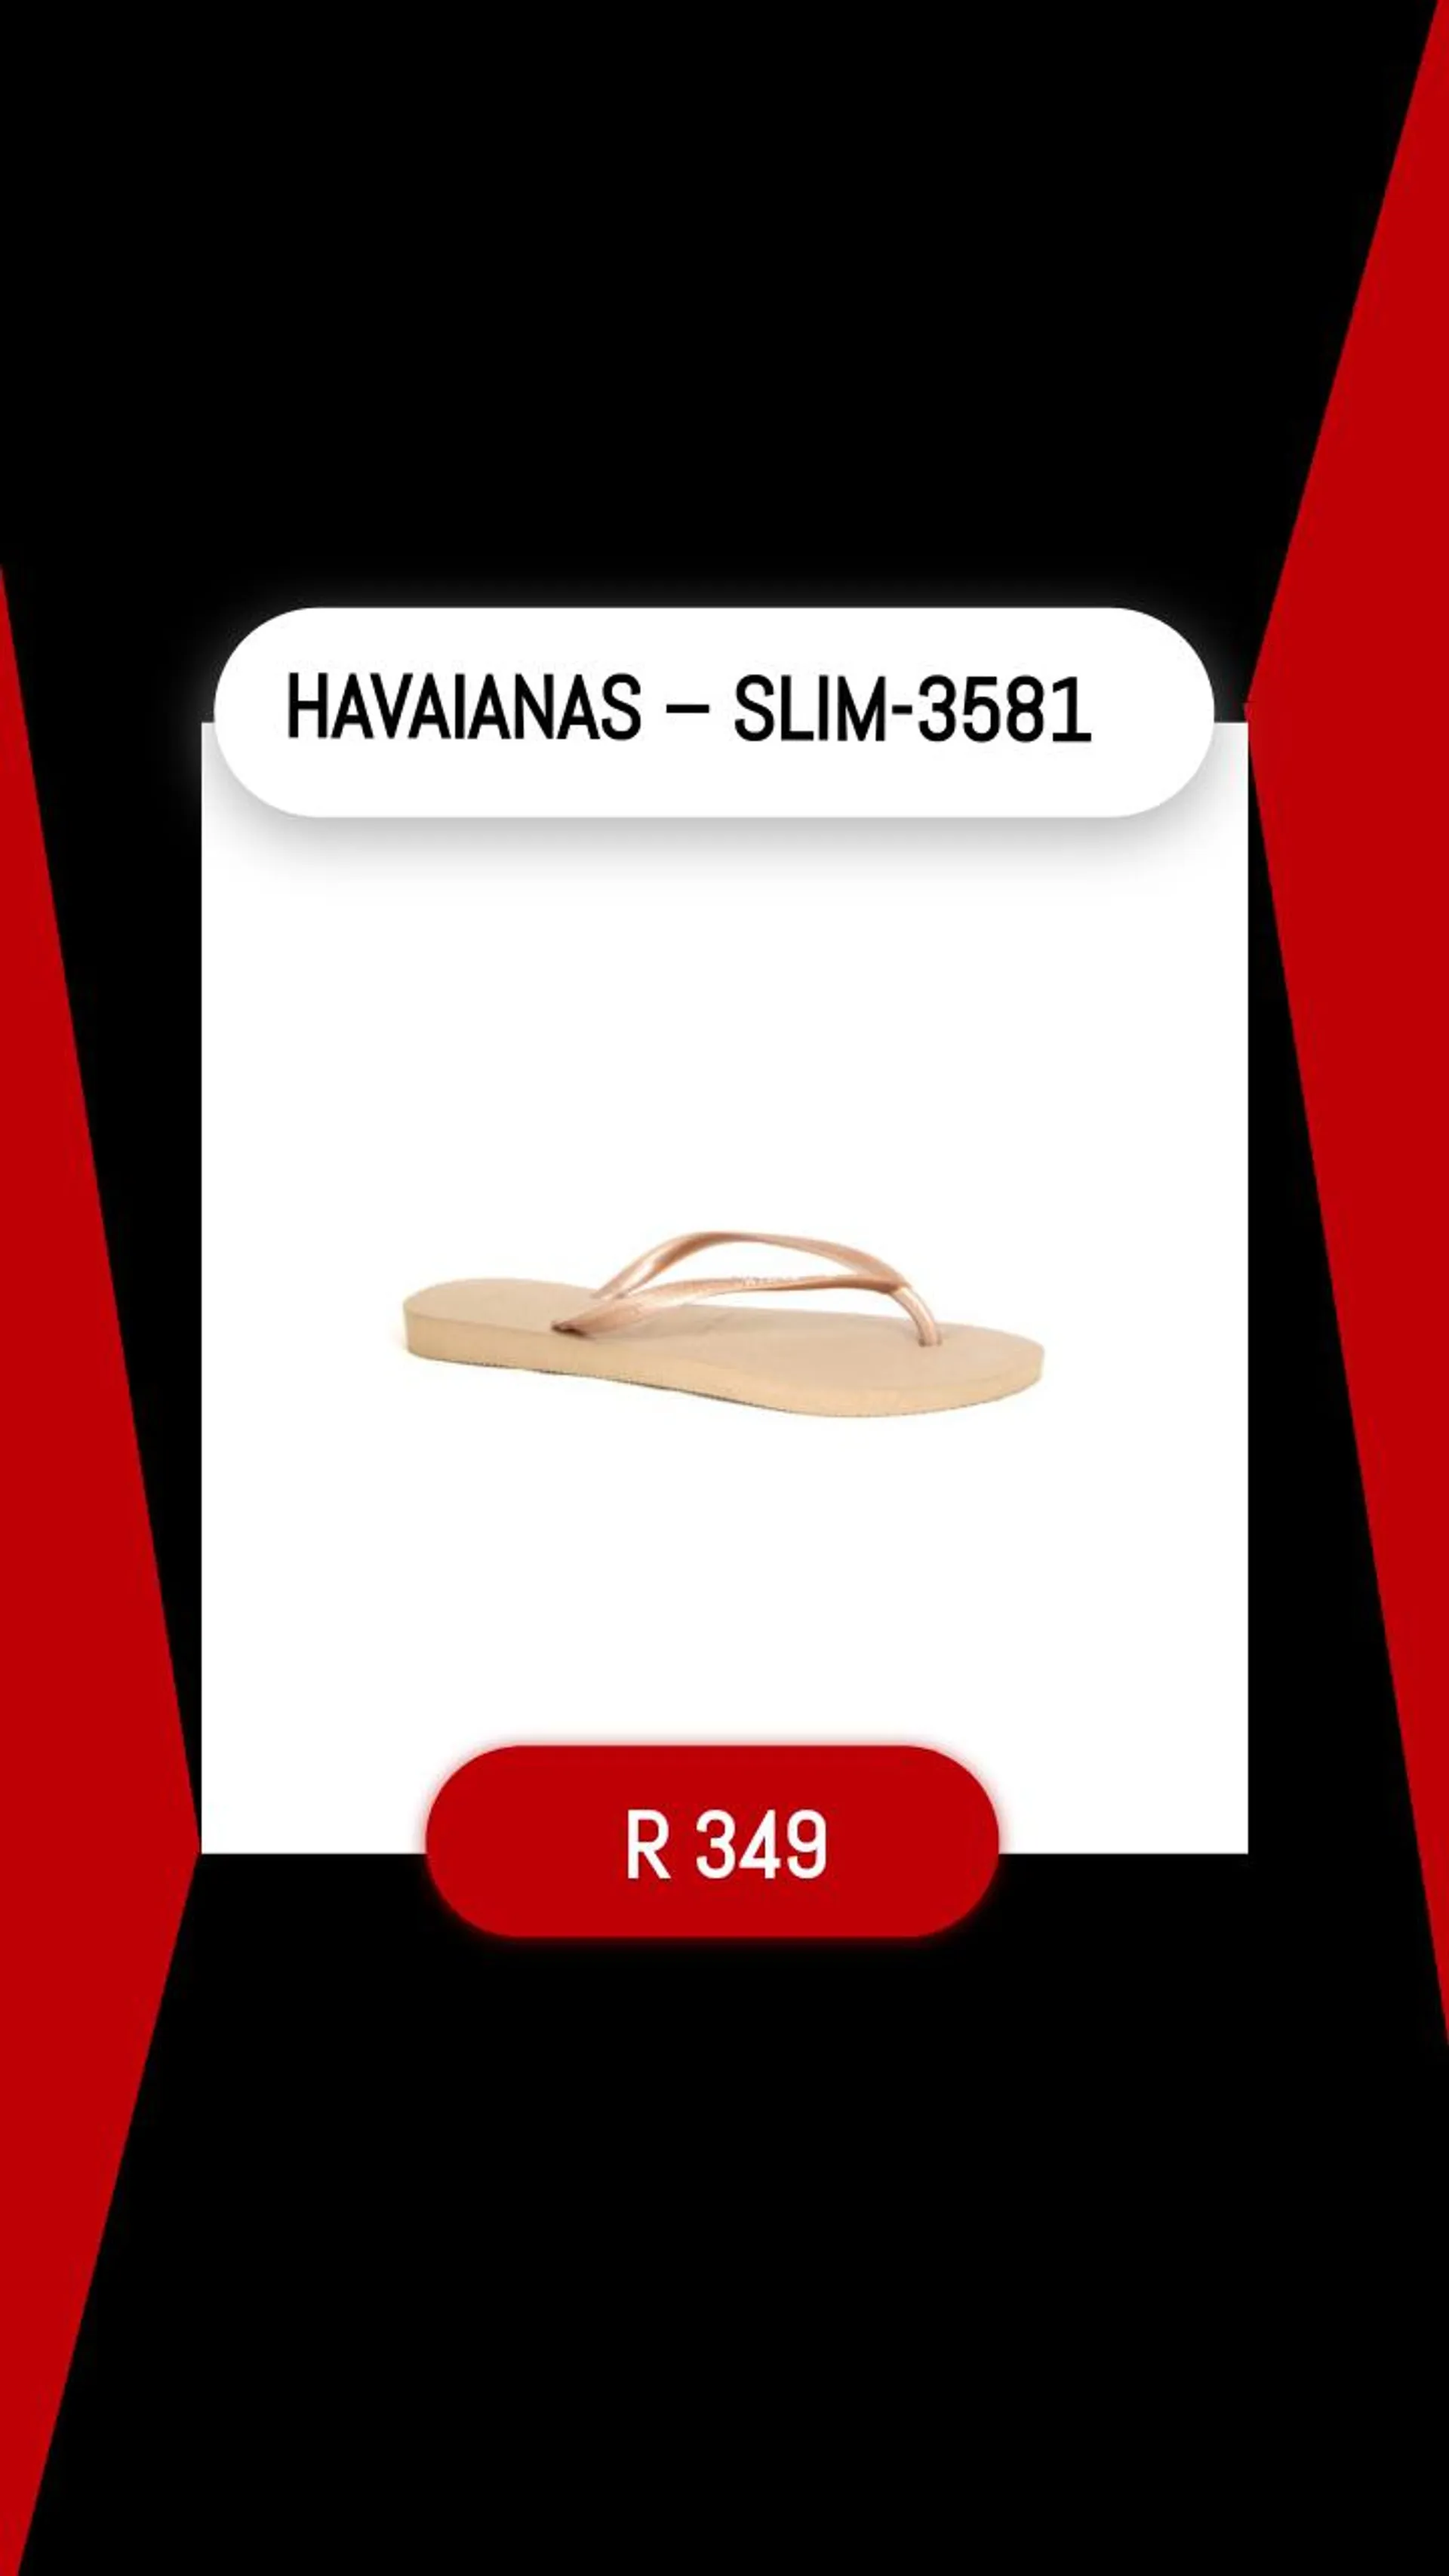 HAVAIANAS – SLIM-3581